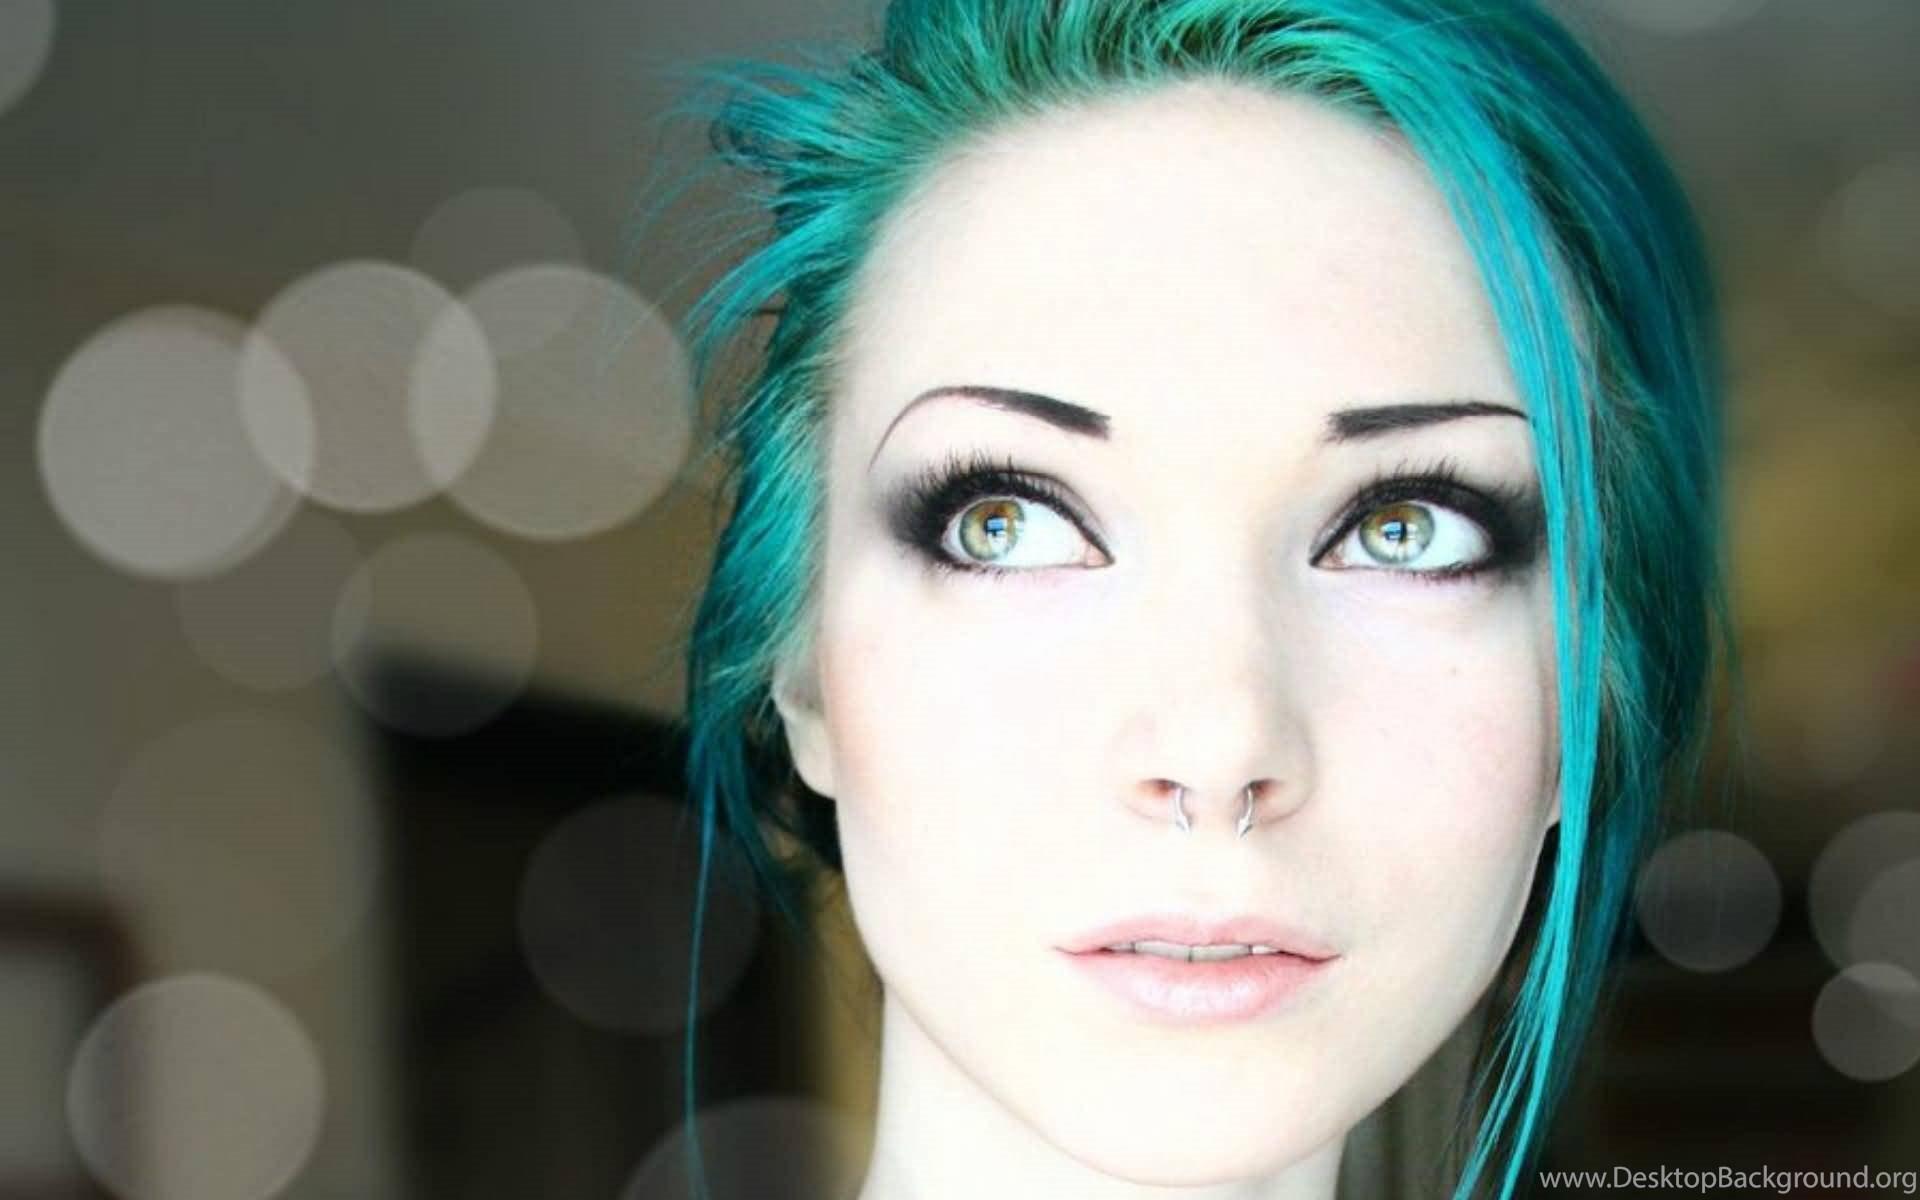 10. "Light Blue Hair Girl" on Tumblr - wide 2